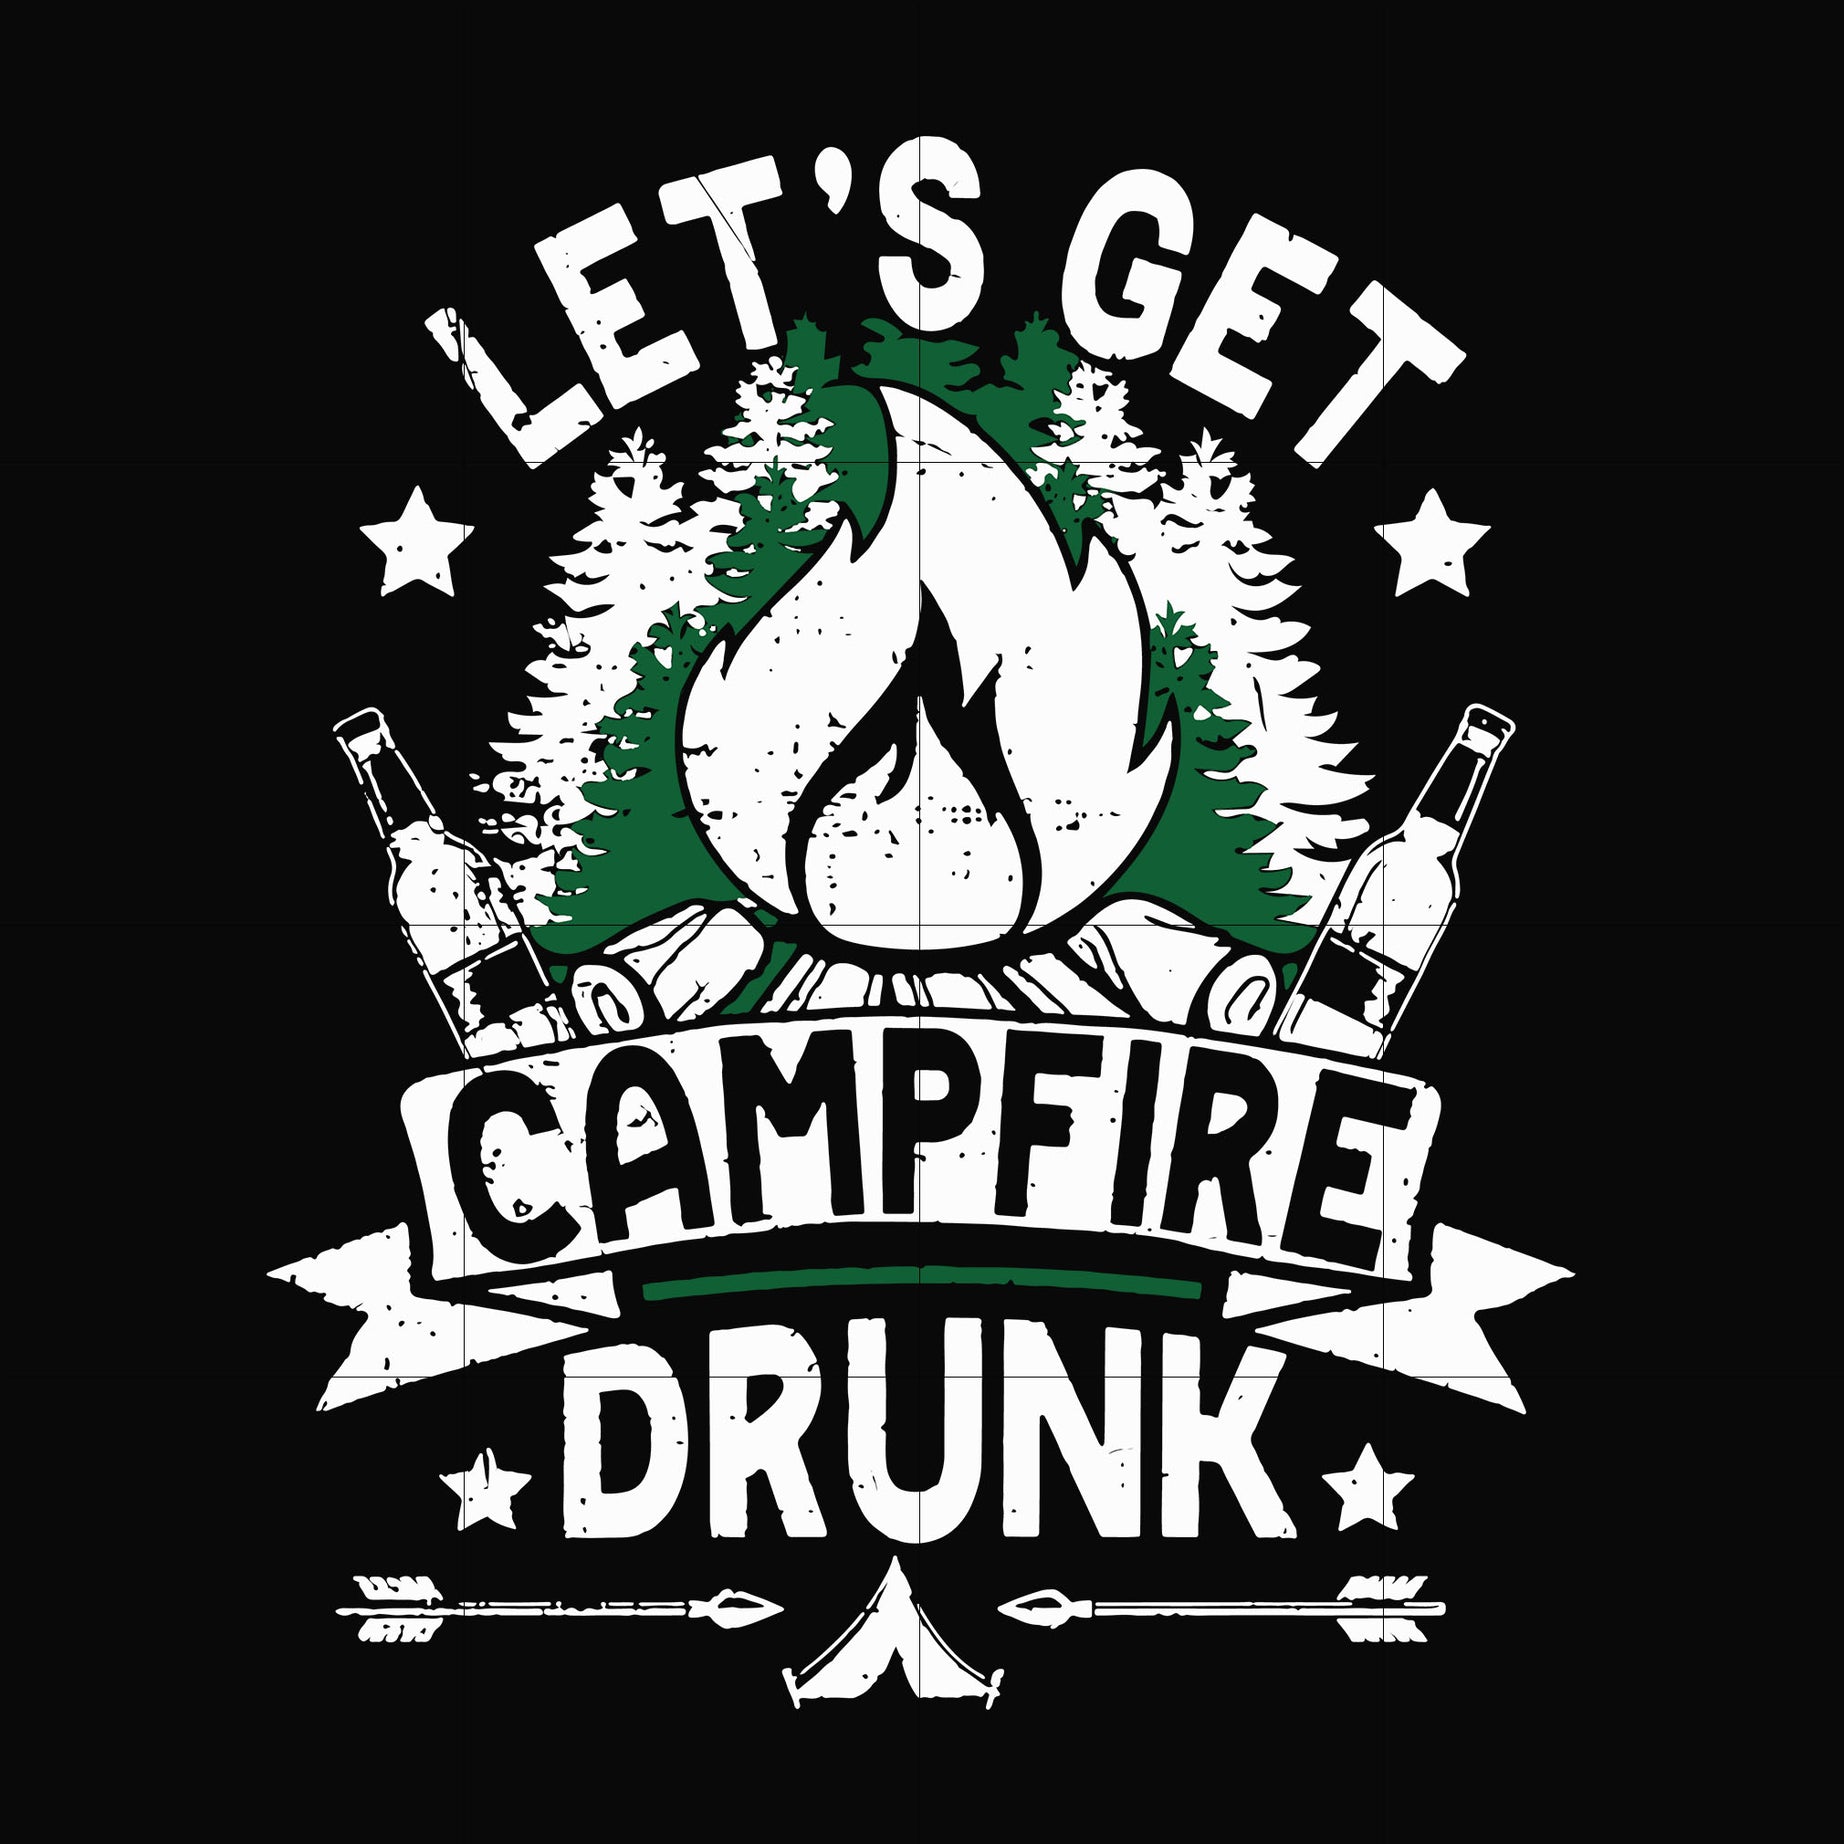 Let's get campfire drunk svg, png, dxf, eps digital file CMP031